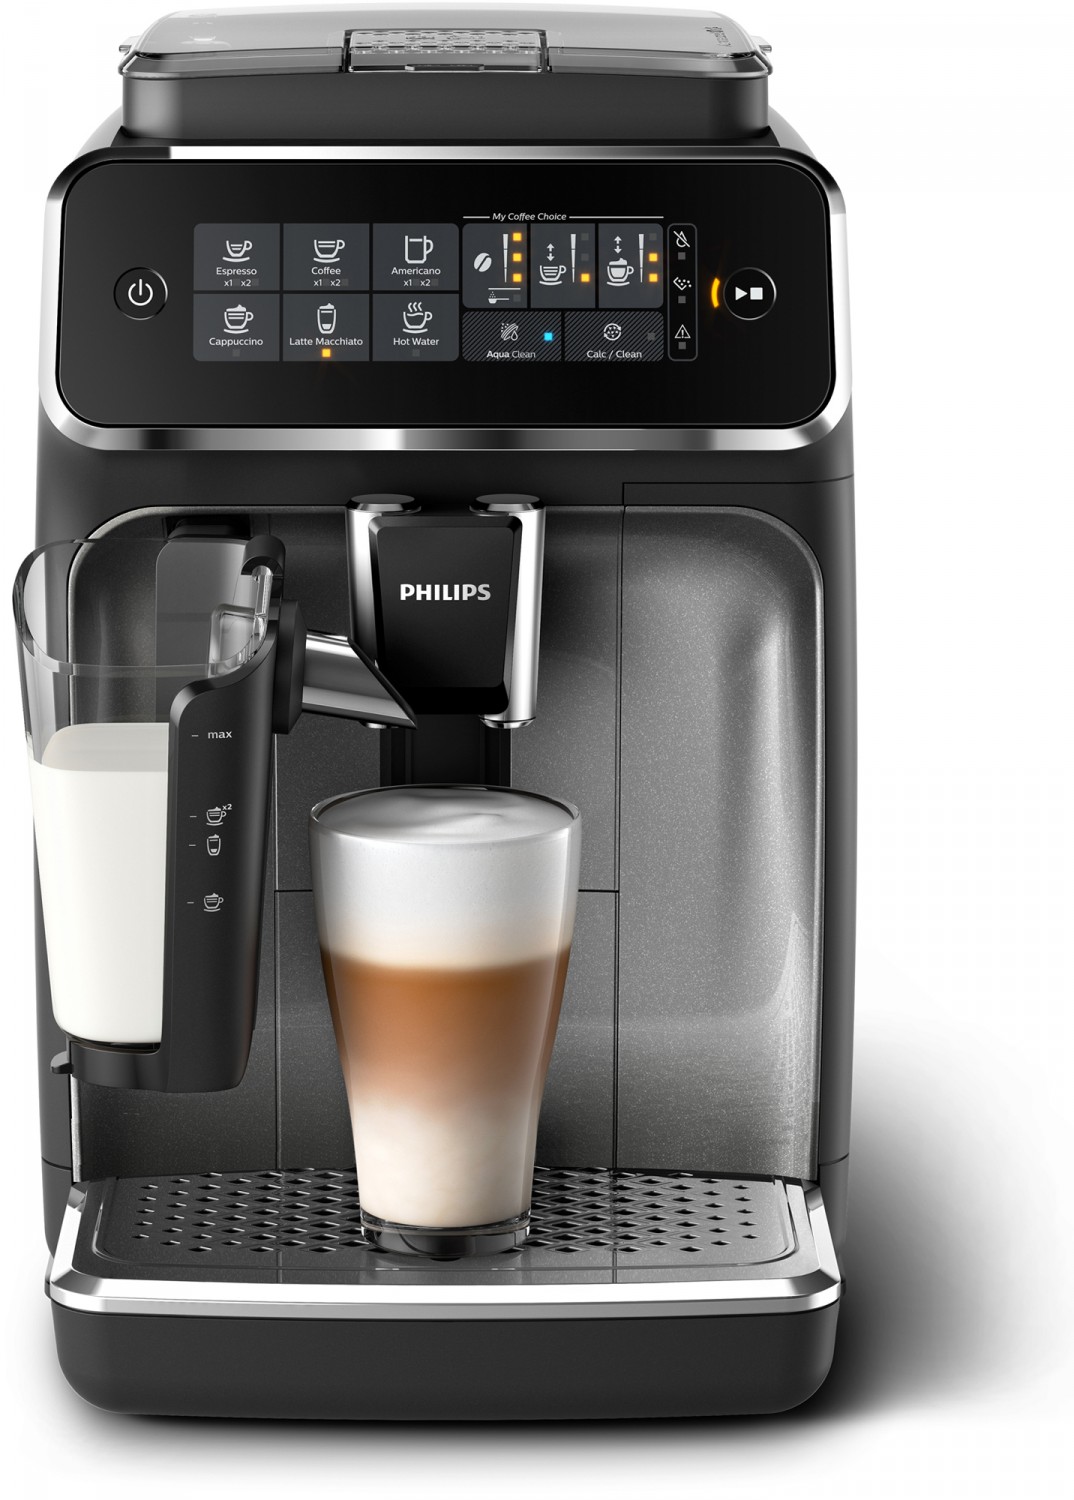 Die neuen Kaffeevollautomaten-Serien 3200, 2200 und 1200 von Philips